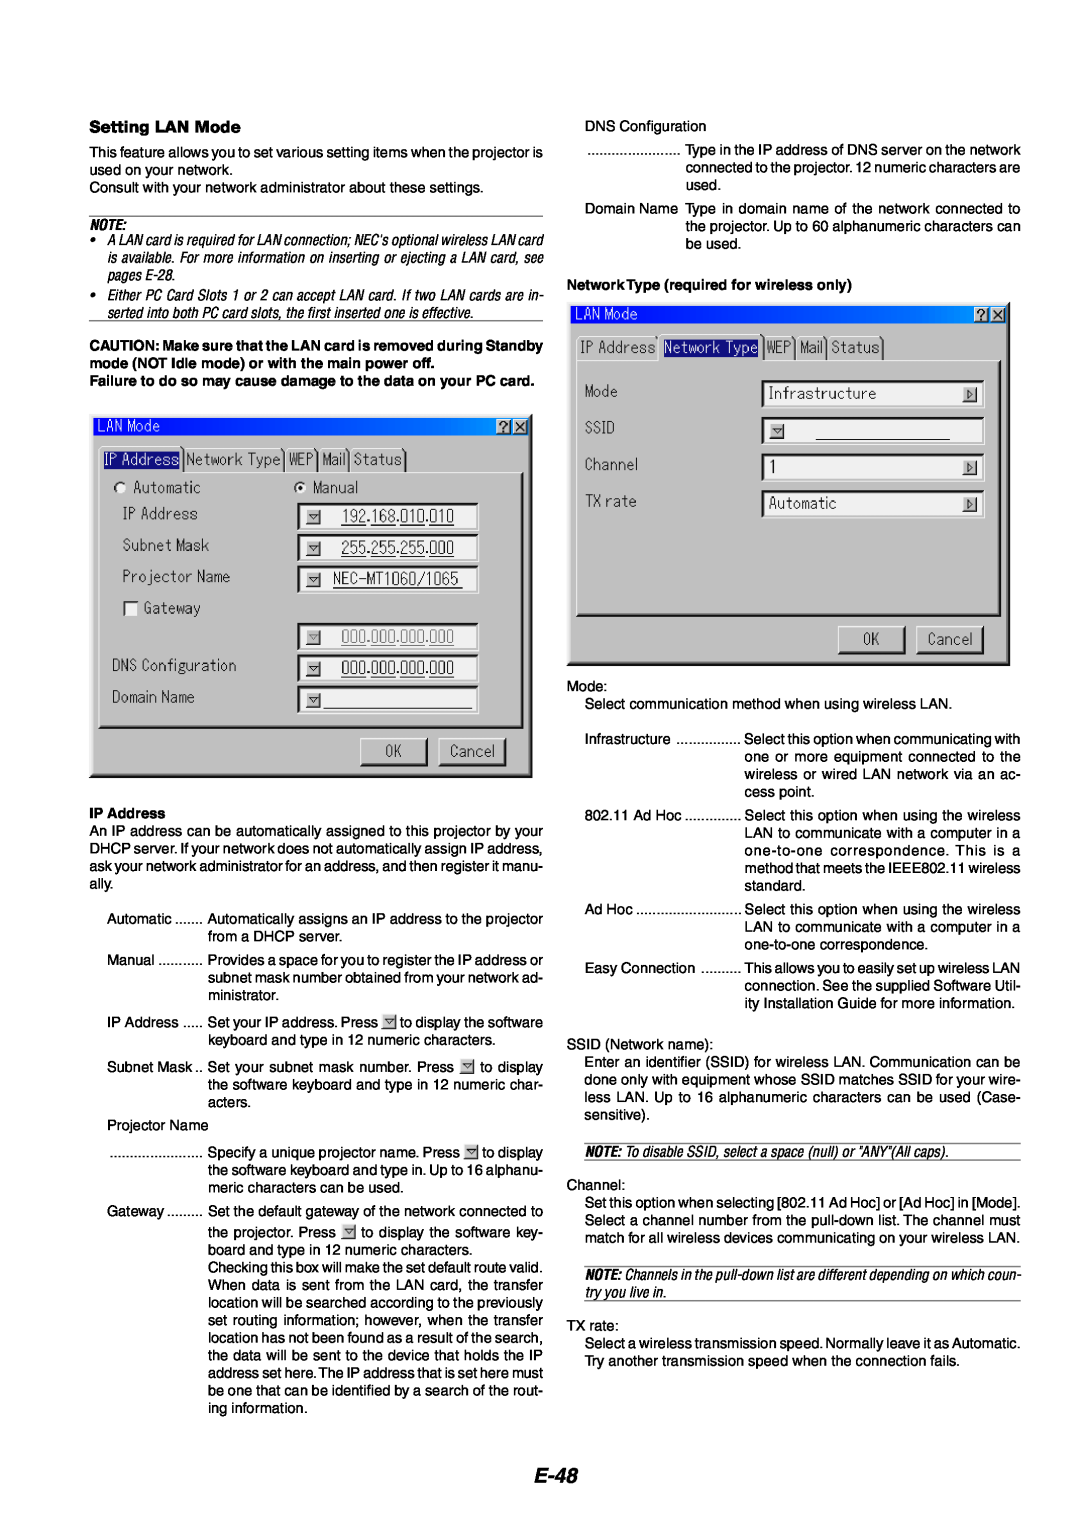 NEC MT1060 user manual E-48, Setting LAN Mode 